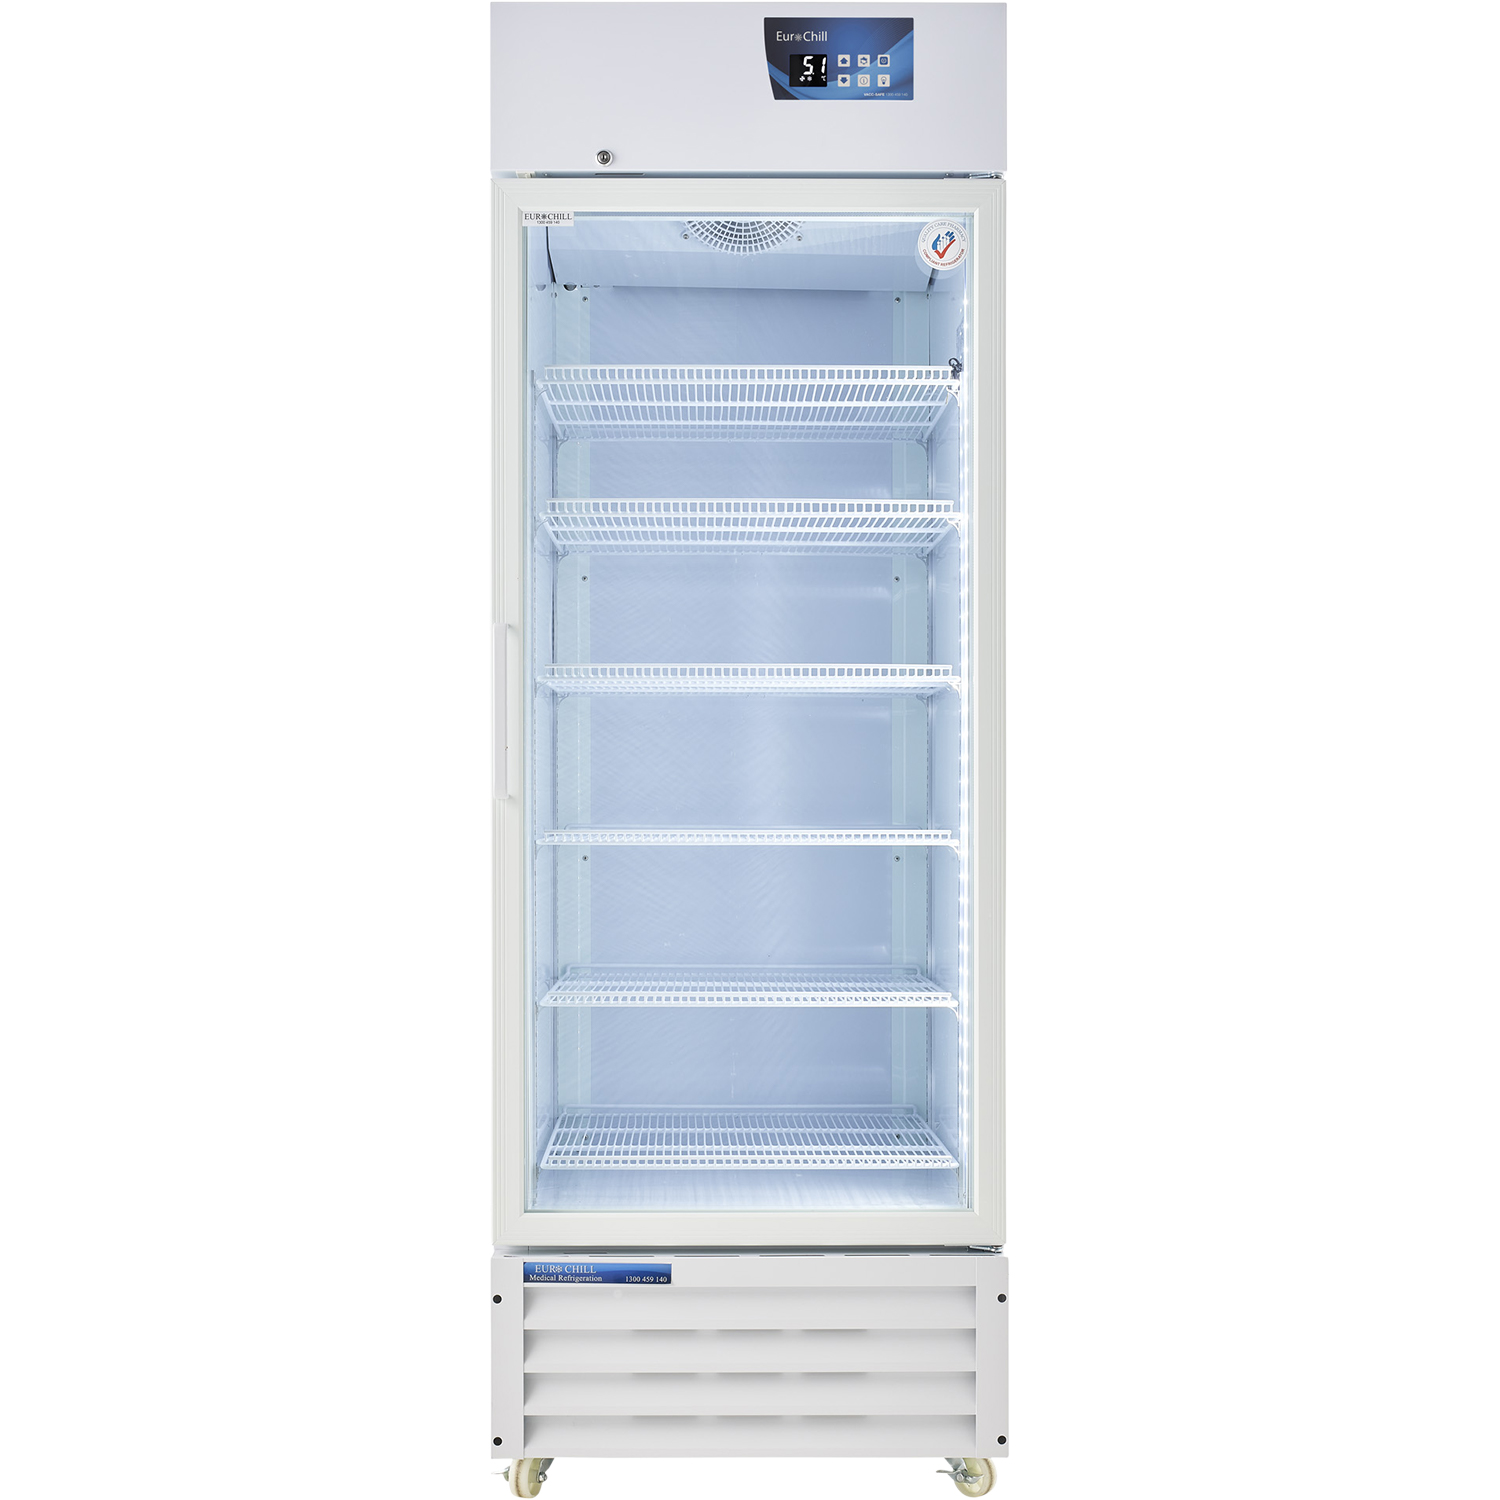 Vacc-Safe 600 Premium Vaccine Refrigerator